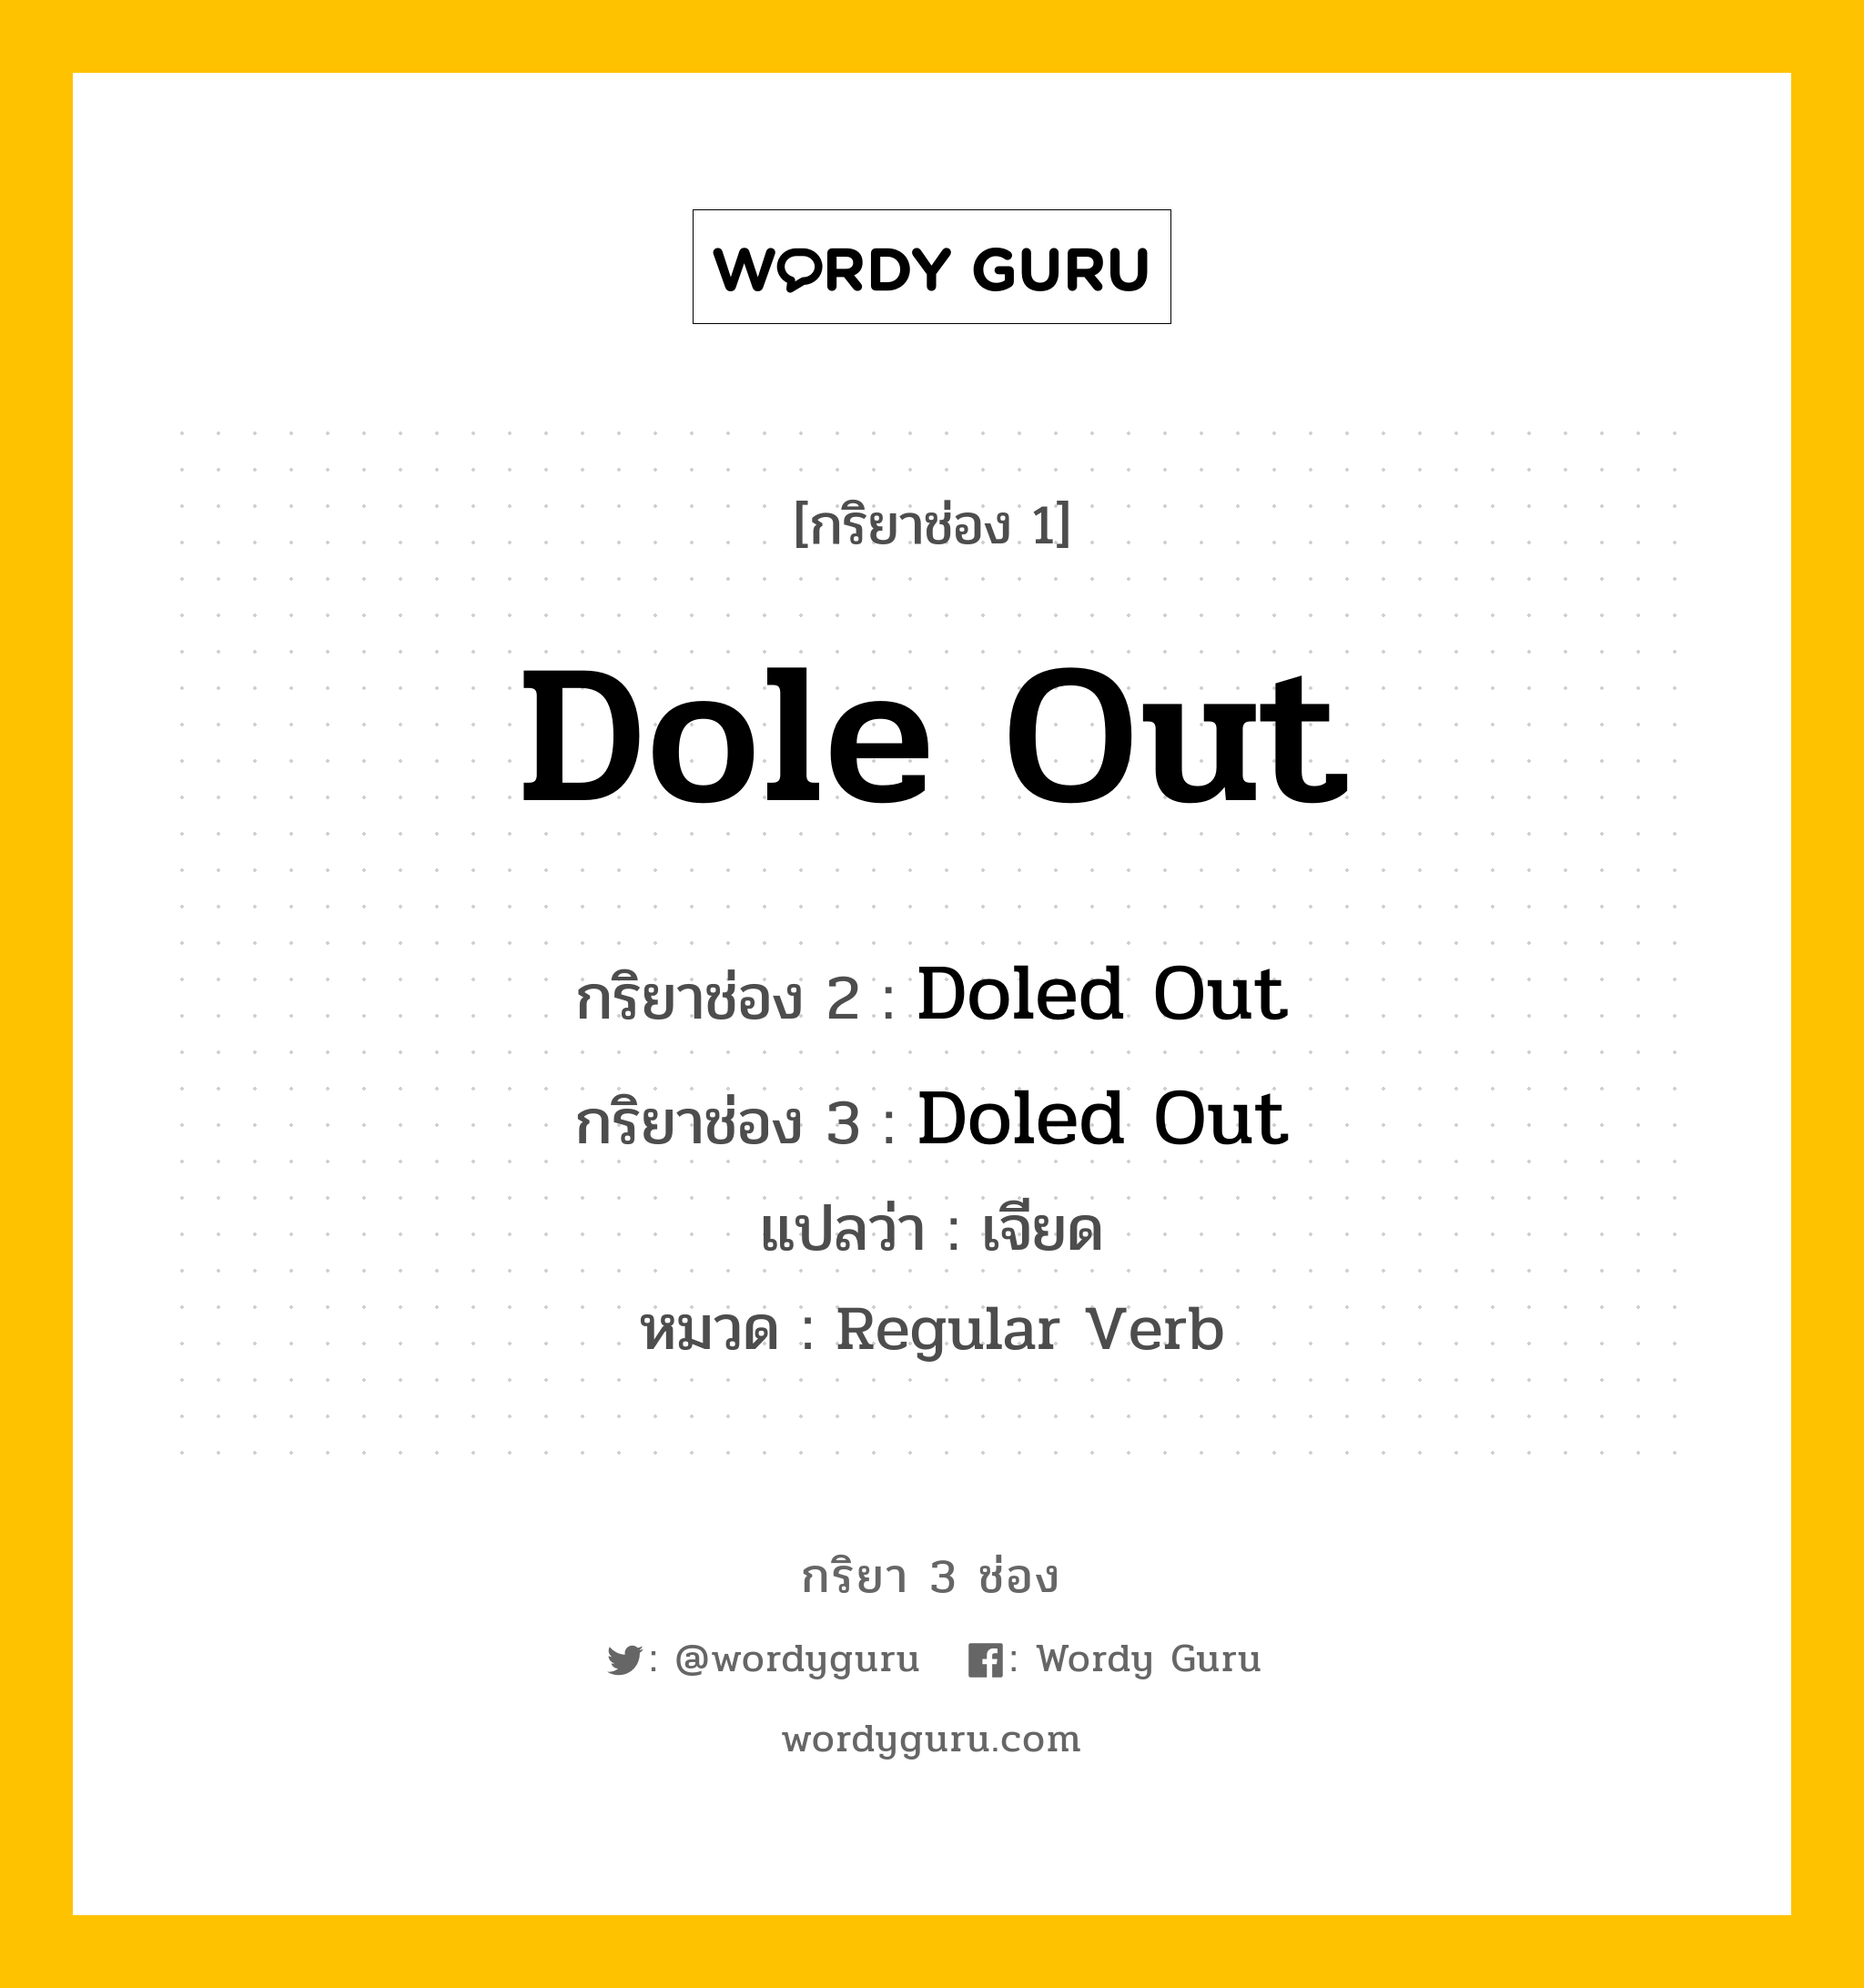 กริยา 3 ช่อง: Dole Out ช่อง 2 Dole Out ช่อง 3 คืออะไร, กริยาช่อง 1 Dole Out กริยาช่อง 2 Doled Out กริยาช่อง 3 Doled Out แปลว่า เจียด หมวด Regular Verb หมวด Regular Verb